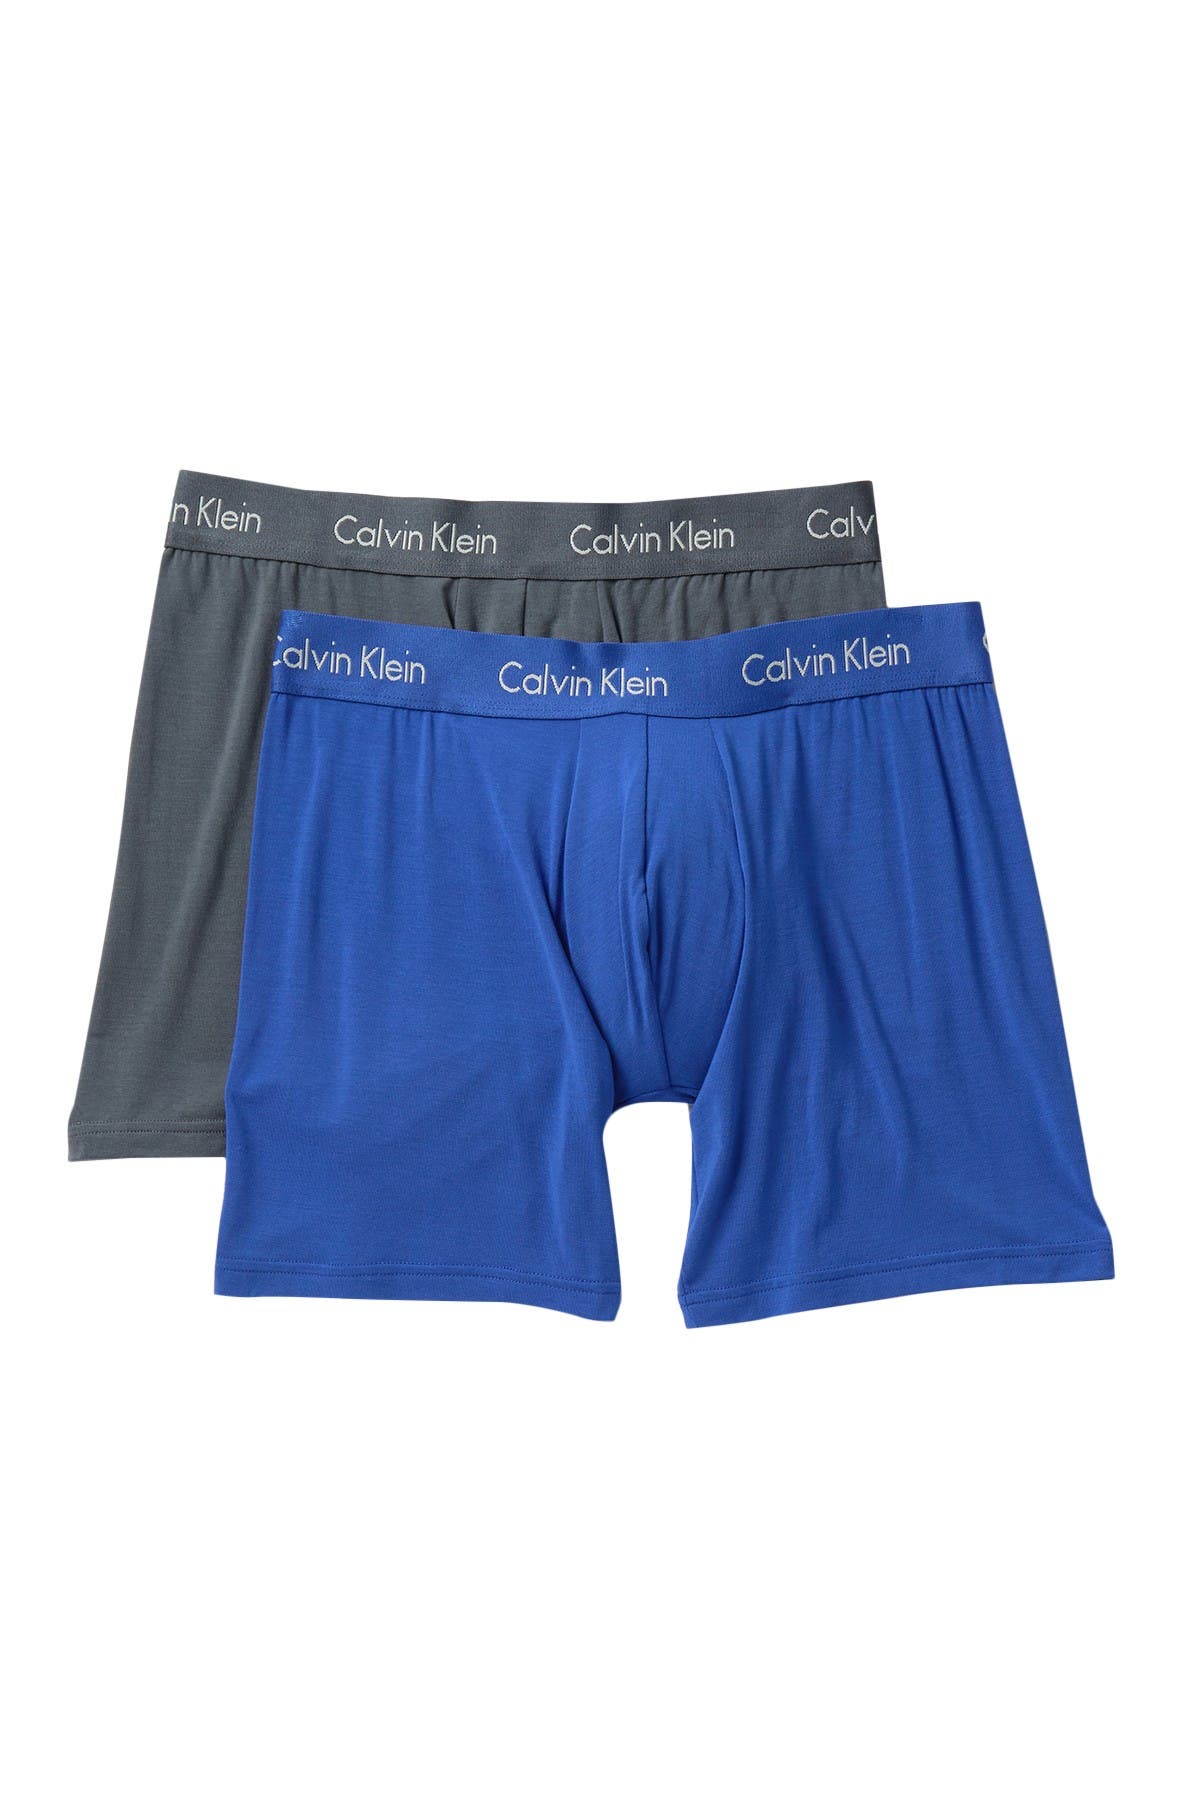 Calvin Klein Modal Boxer Briefs In Open Blue28